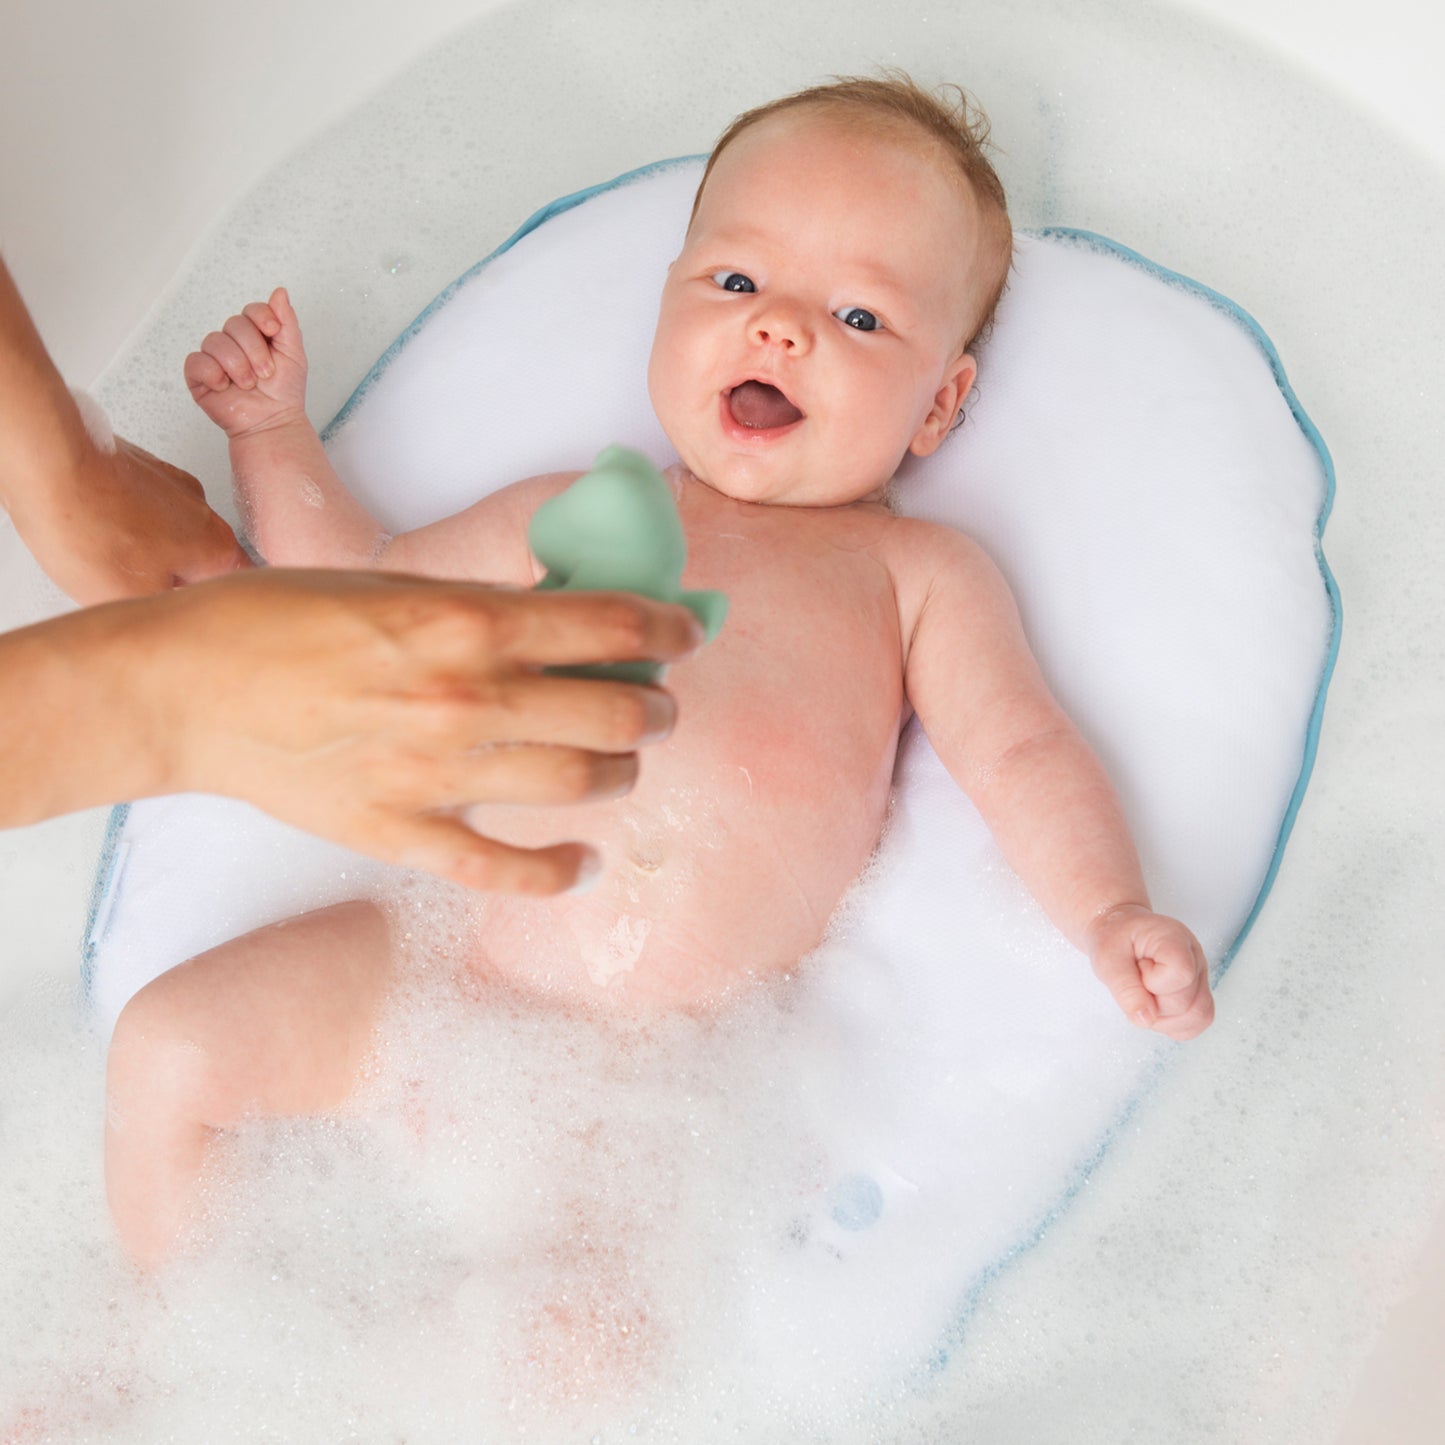 Coussin de bain pour baigner votre bébé les mains libres. Il peut s'allonger en toute sécurité dans l'eau. Sans danger pour le bébé et sans douleur pour les parents.